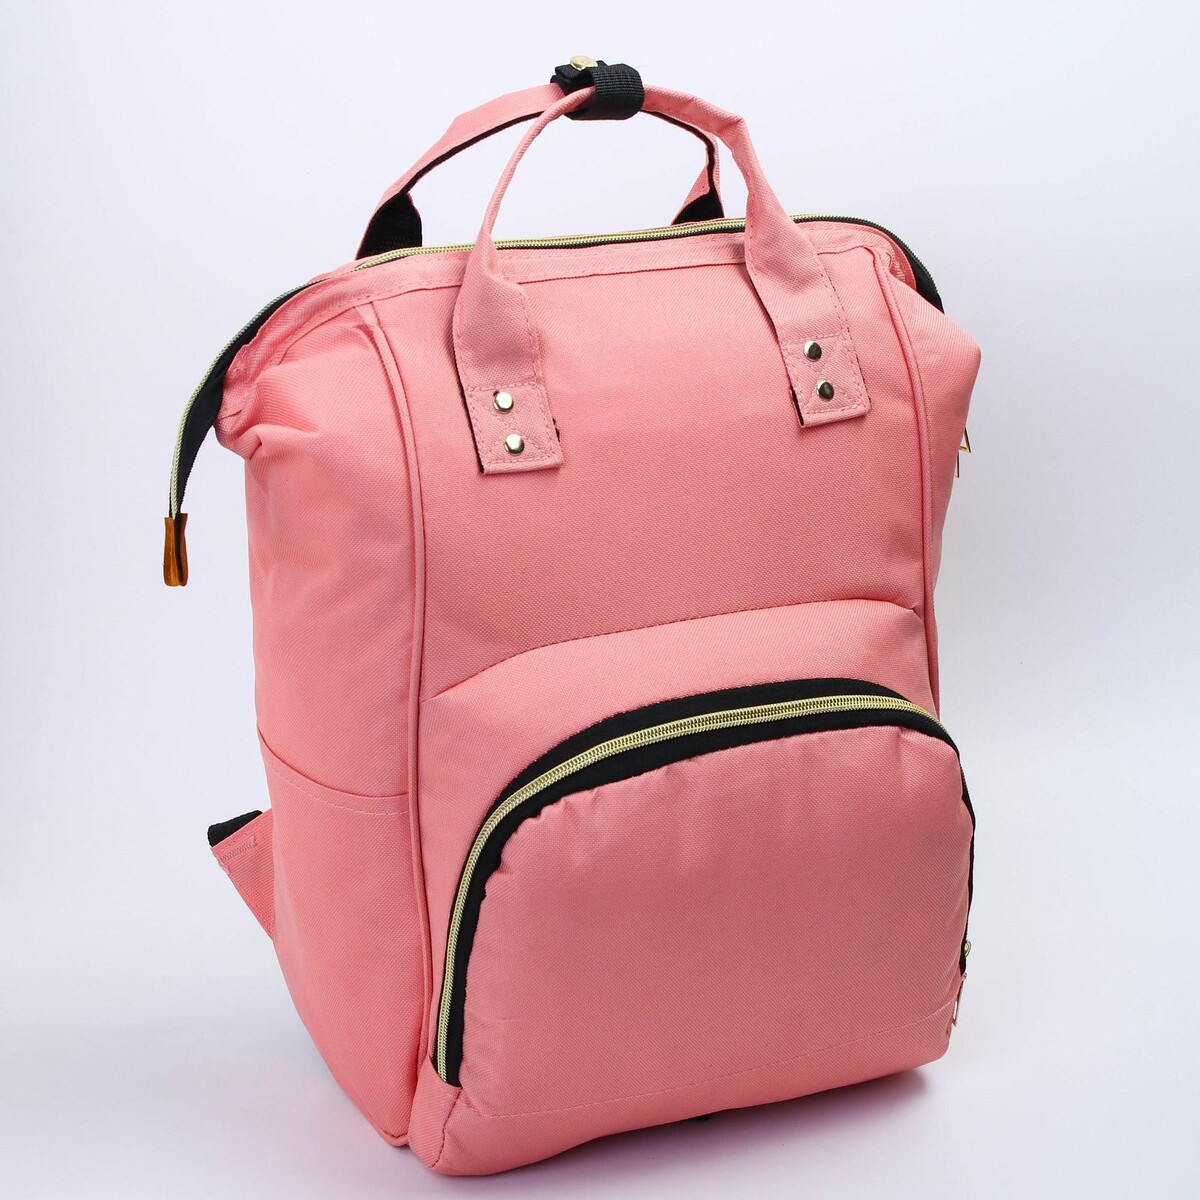 Рюкзак женский с термокарманом, термосумка - портфель, цвет розовый рюкзак kingkong i 30 wb 9064 черн средний фоторюкзак